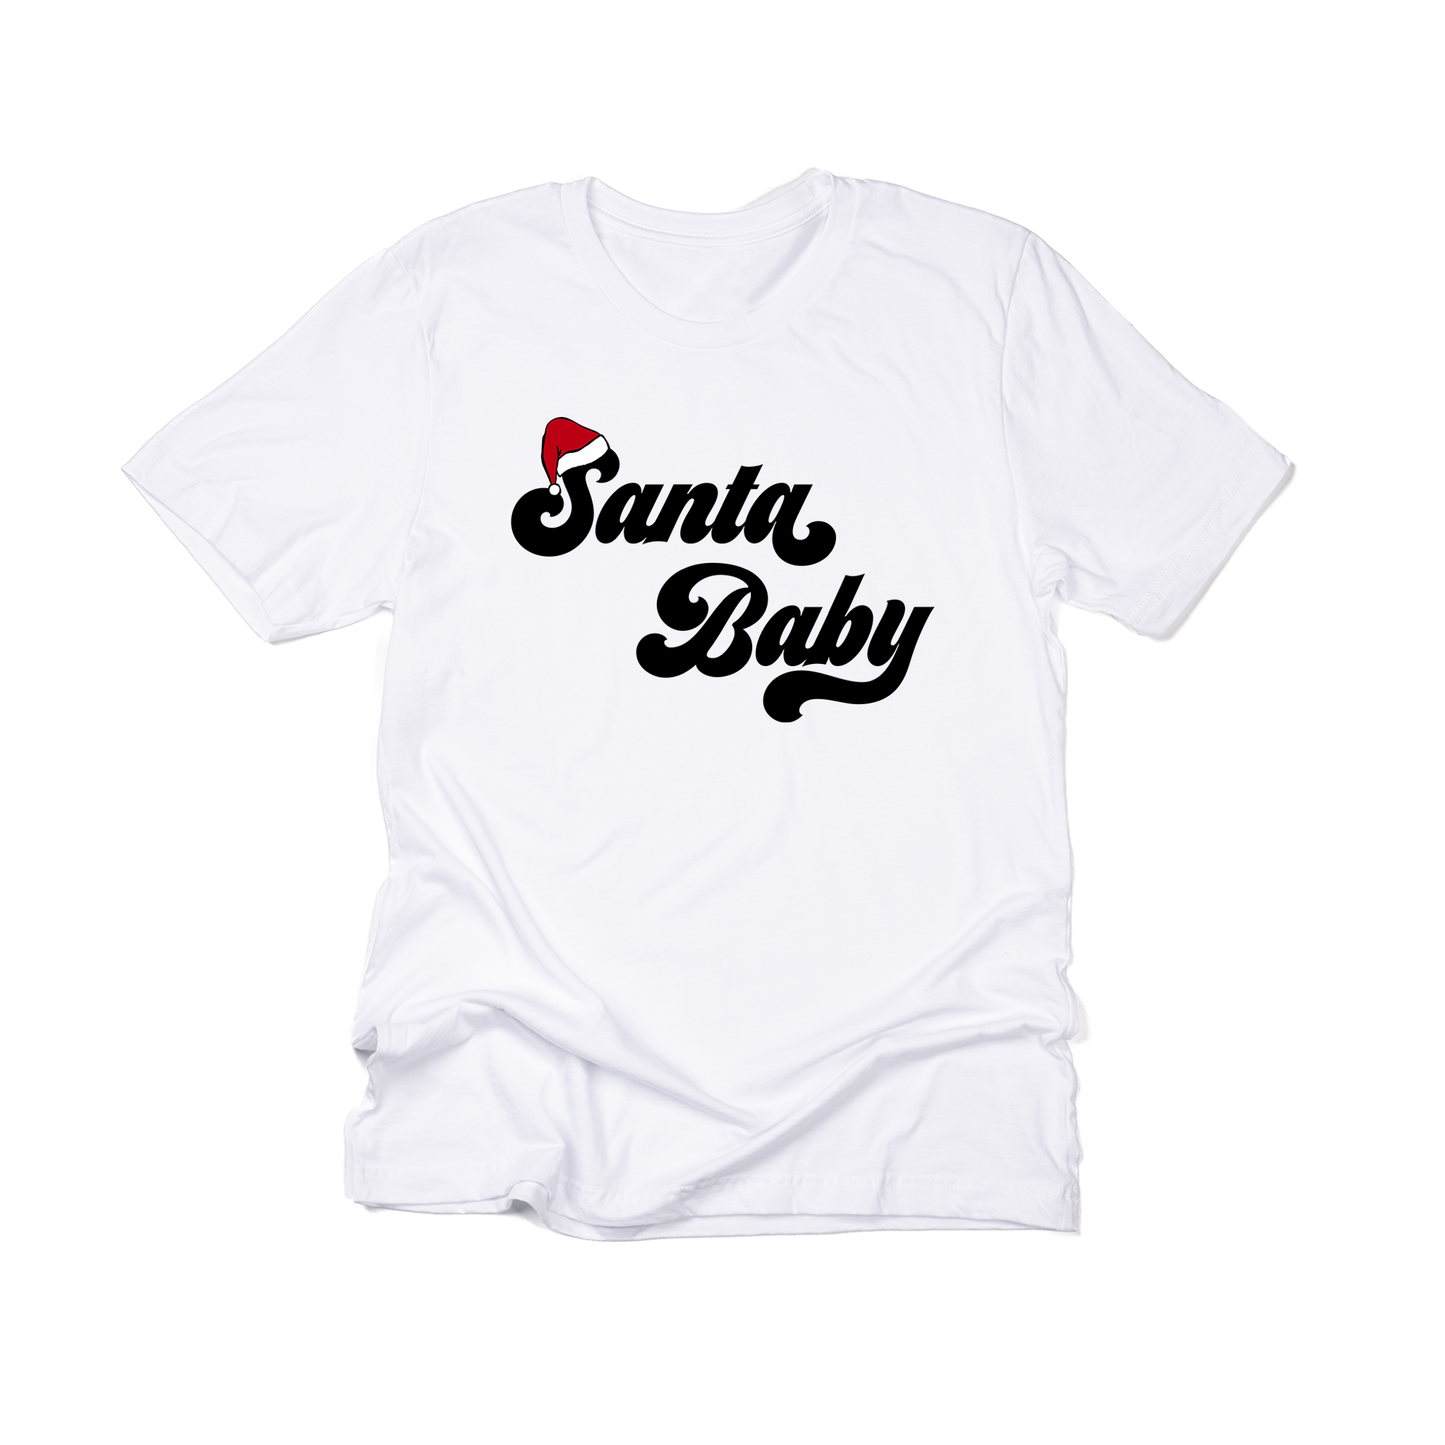 Santa Baby - Tee (White)